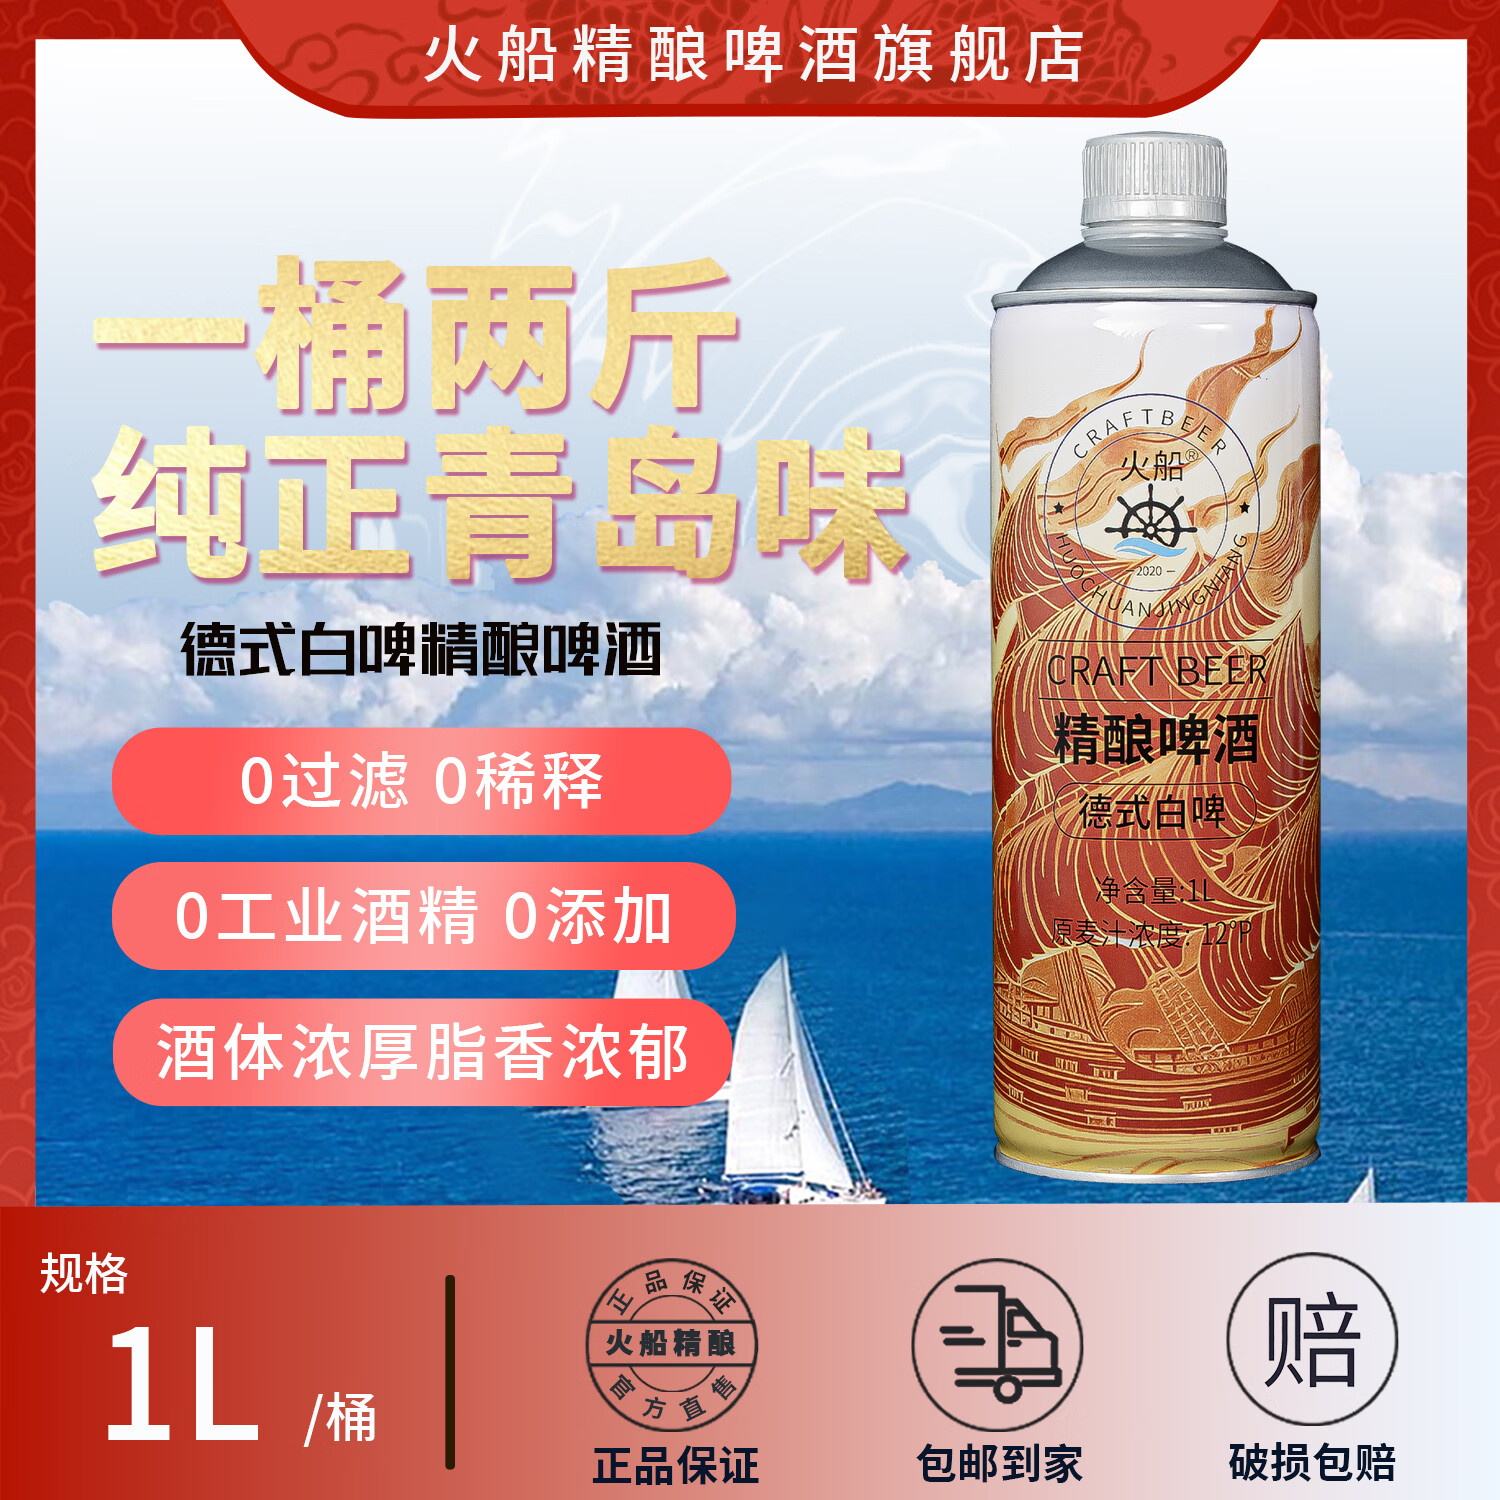 火船【1桶2斤】青岛精酿原浆啤酒1L/桶 18.9元